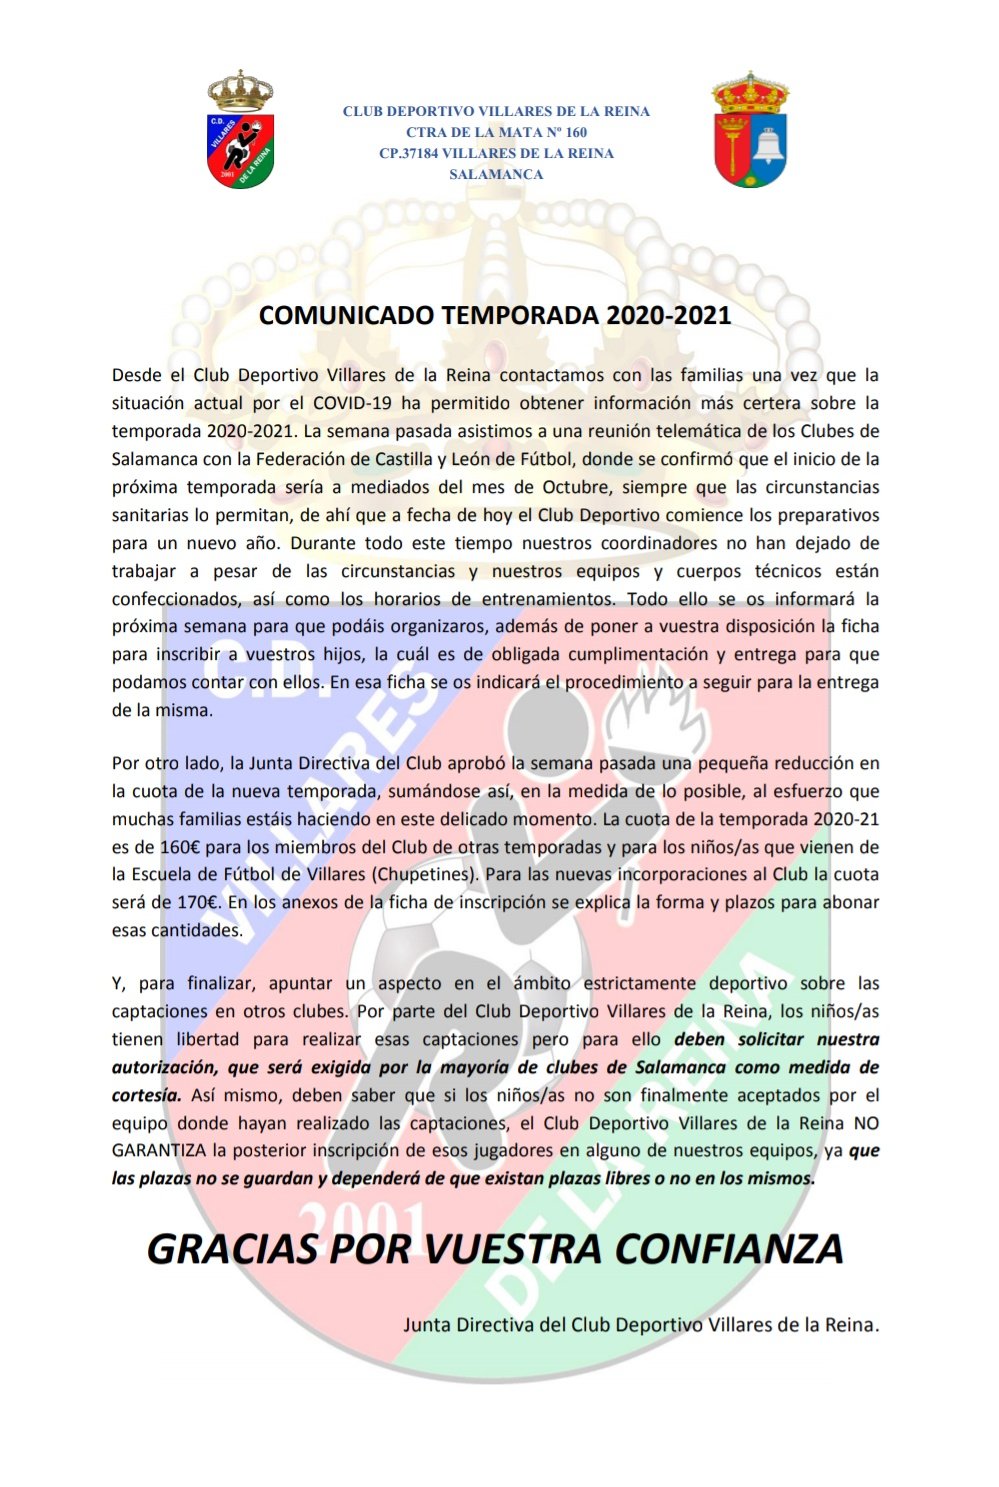 COMUNICADO DEL CLUB NUEVA TEMPORADA 2020-21